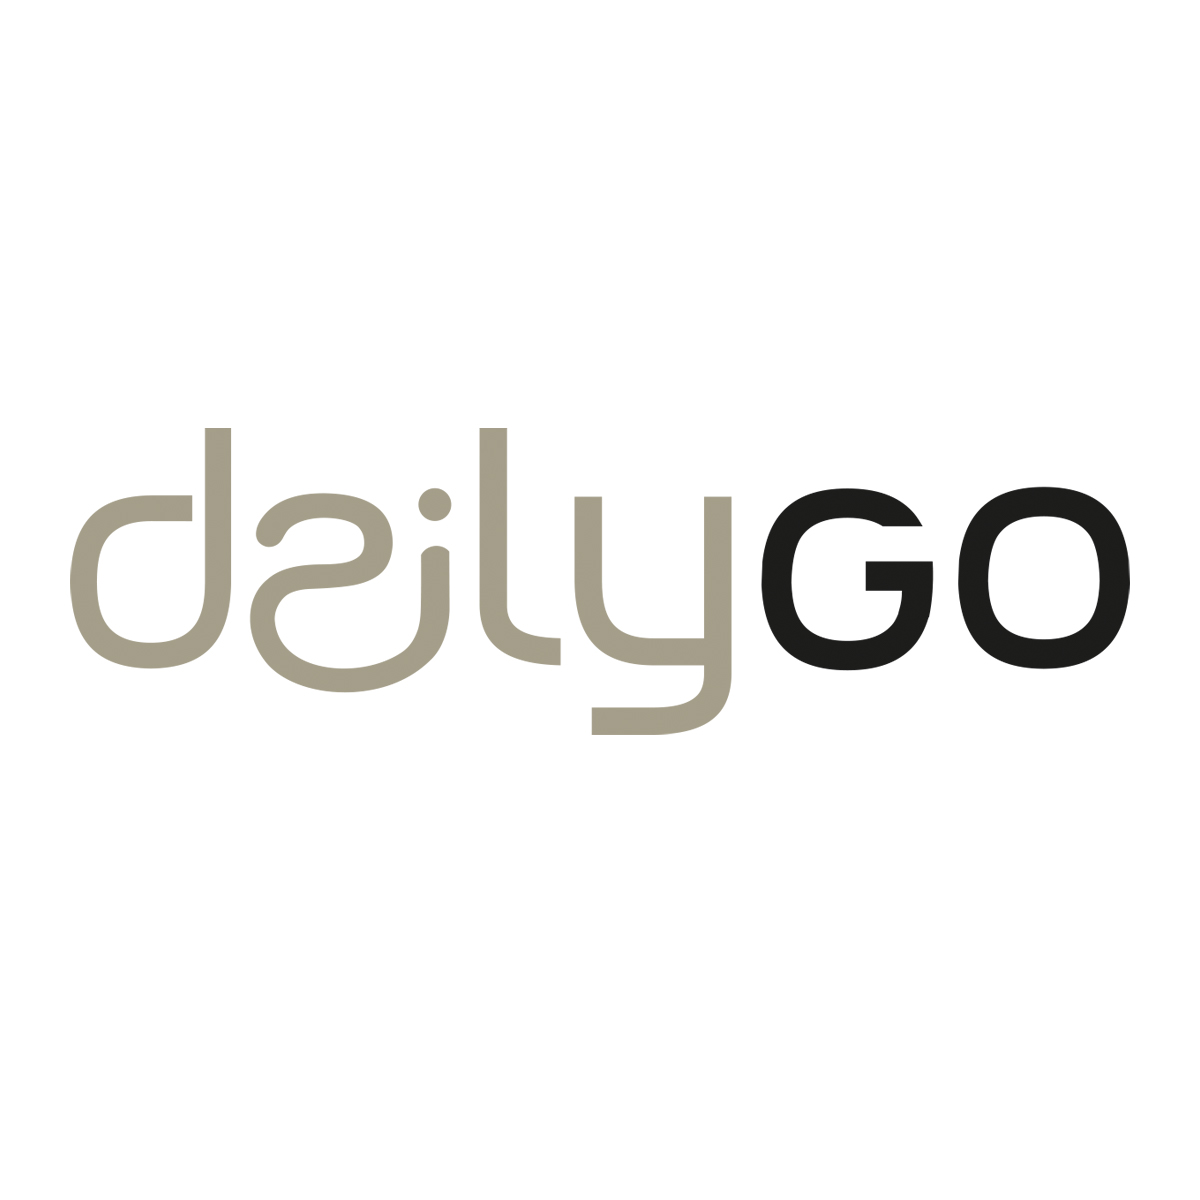 Daily GO Haarschmuck von Trisa Accessoires, die Basics in Gut für jeden Tag. Logo auf weissem Hintergrund